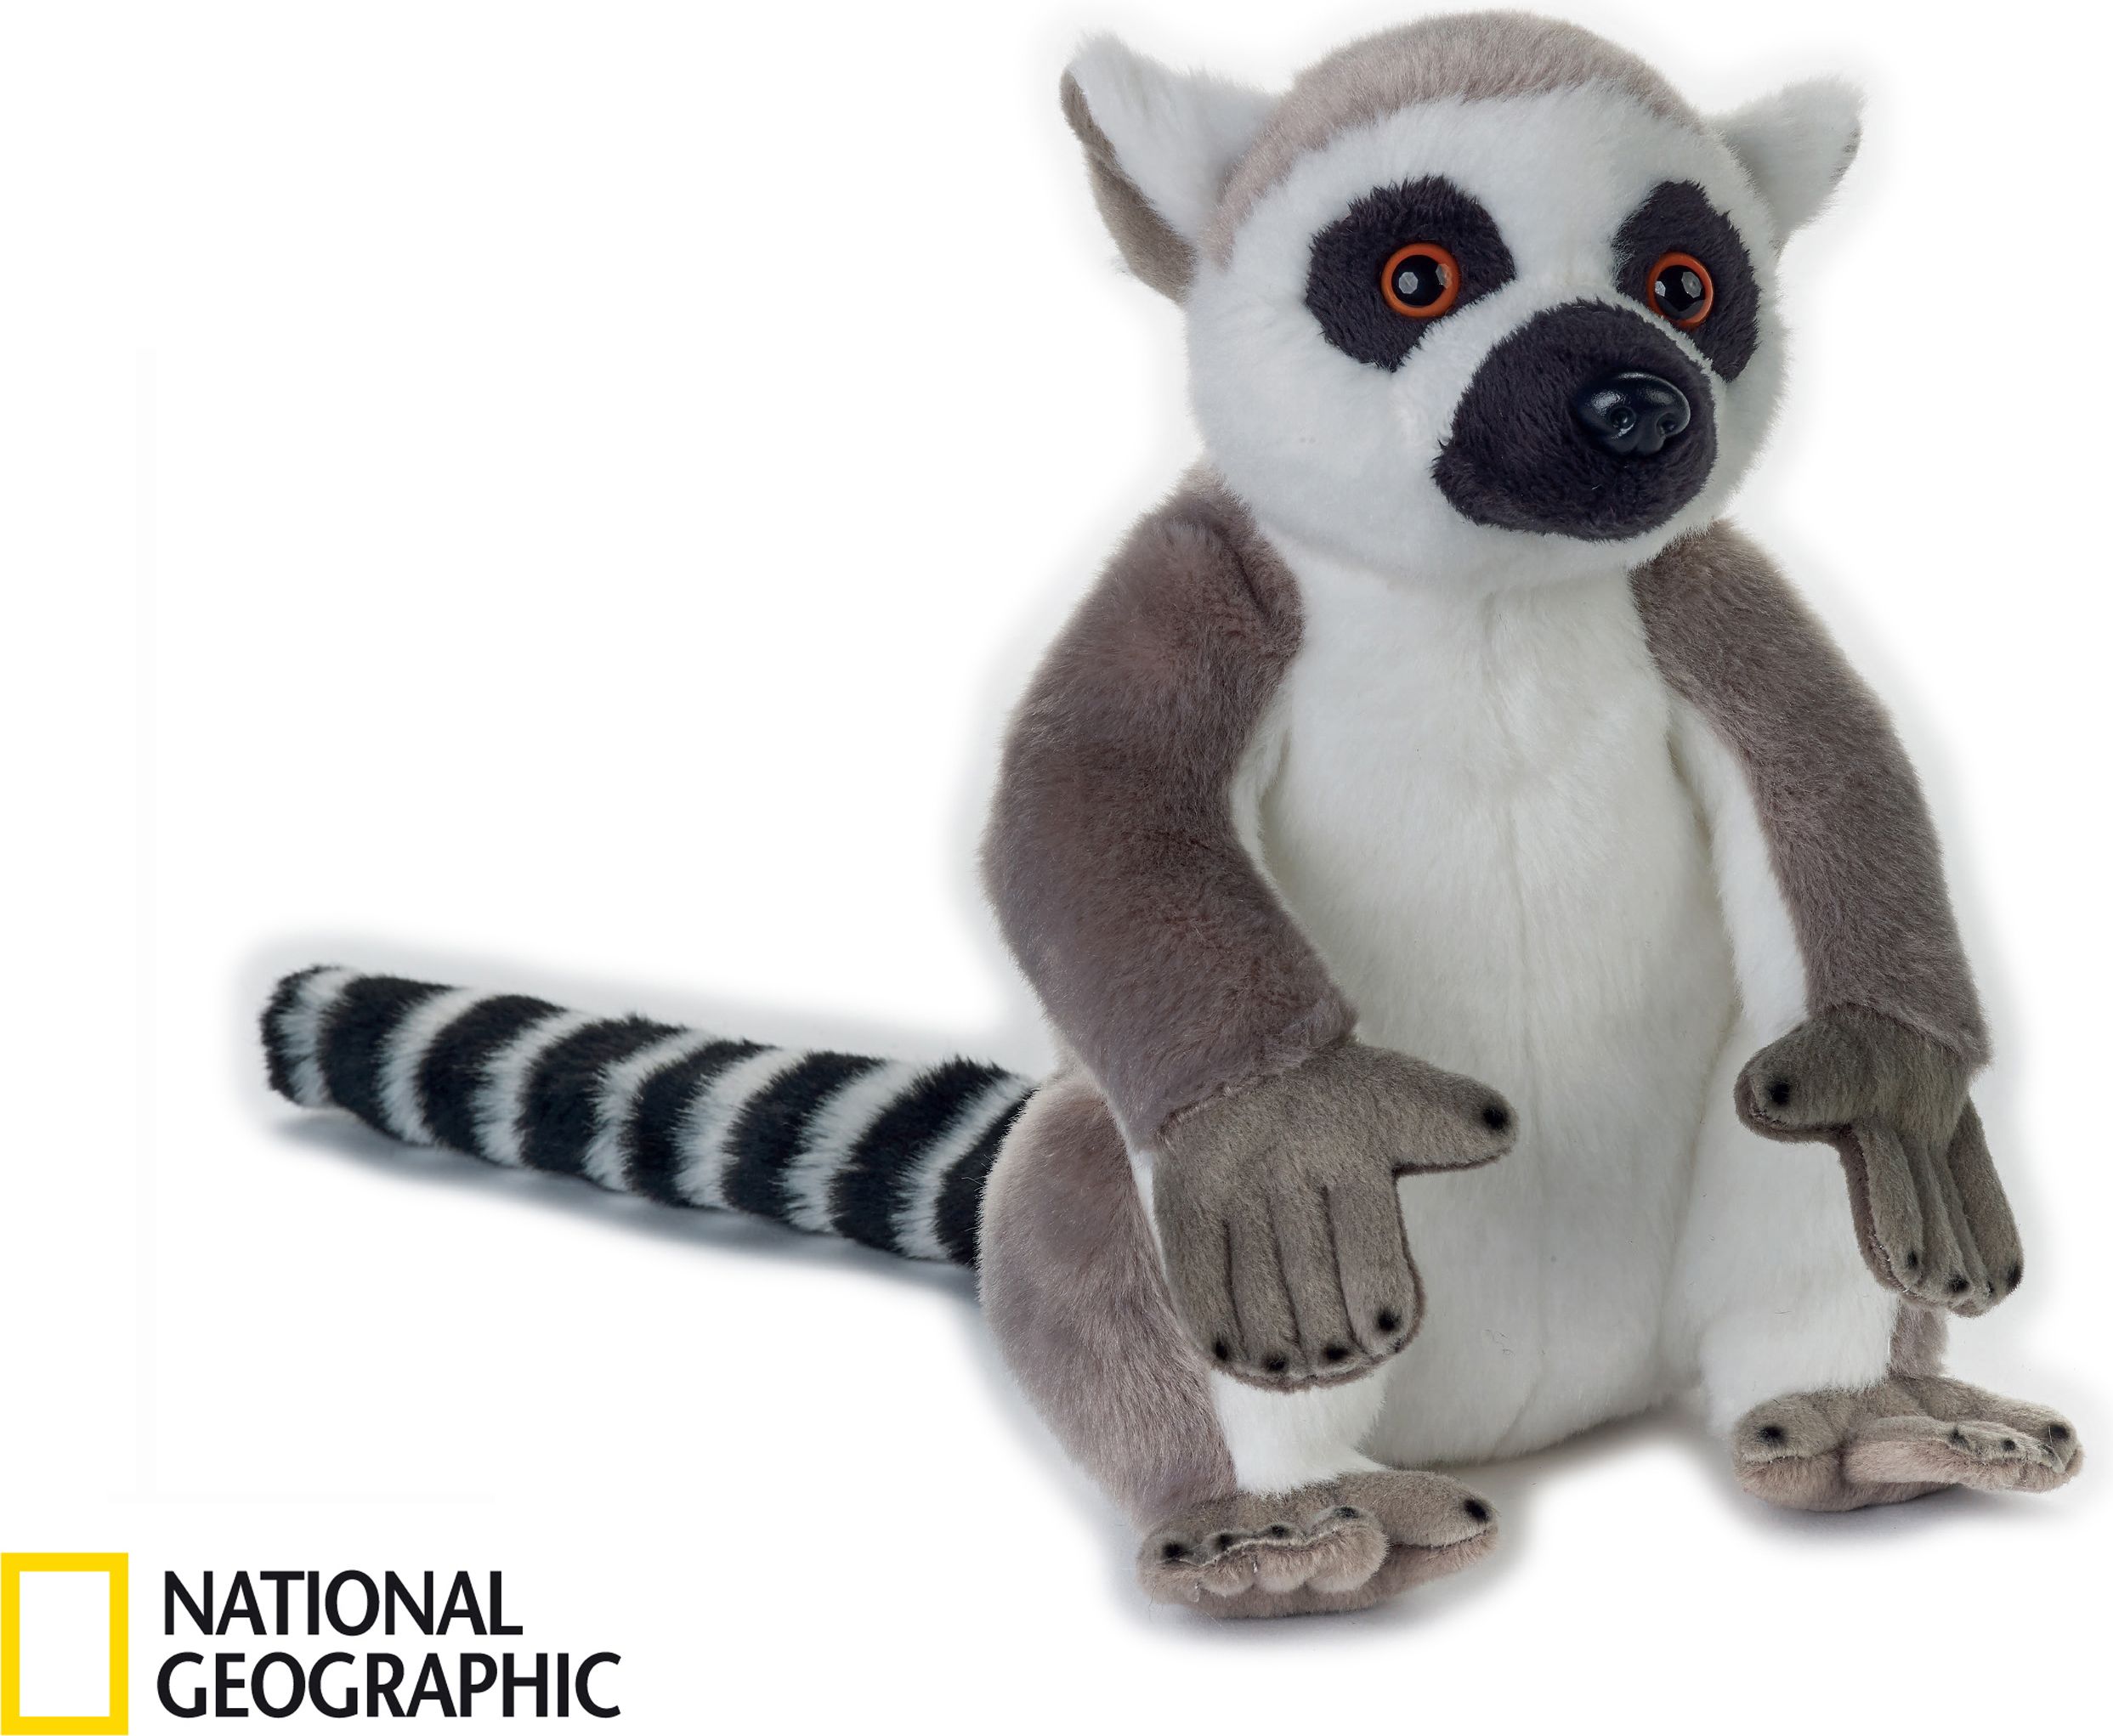 NATIONAL GEOGRAPHIC plyšák Lemur - obrázek 1